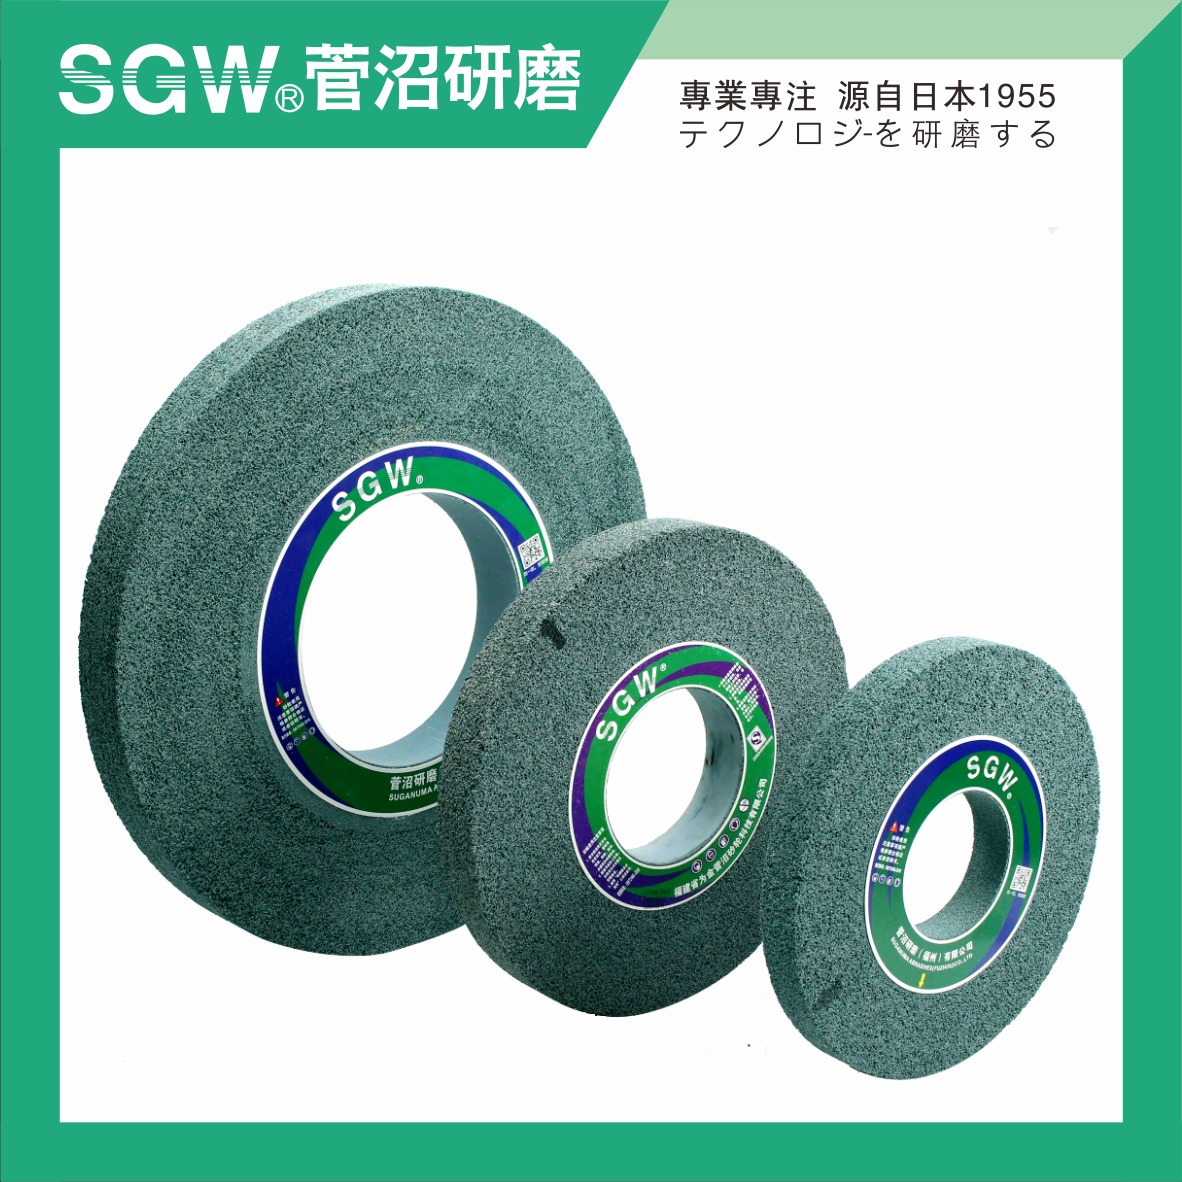 陶瓷砂轮 绿碳化硅GC 大气孔 磨钛合金专用 打磨 磨具 不堵塞 散热好